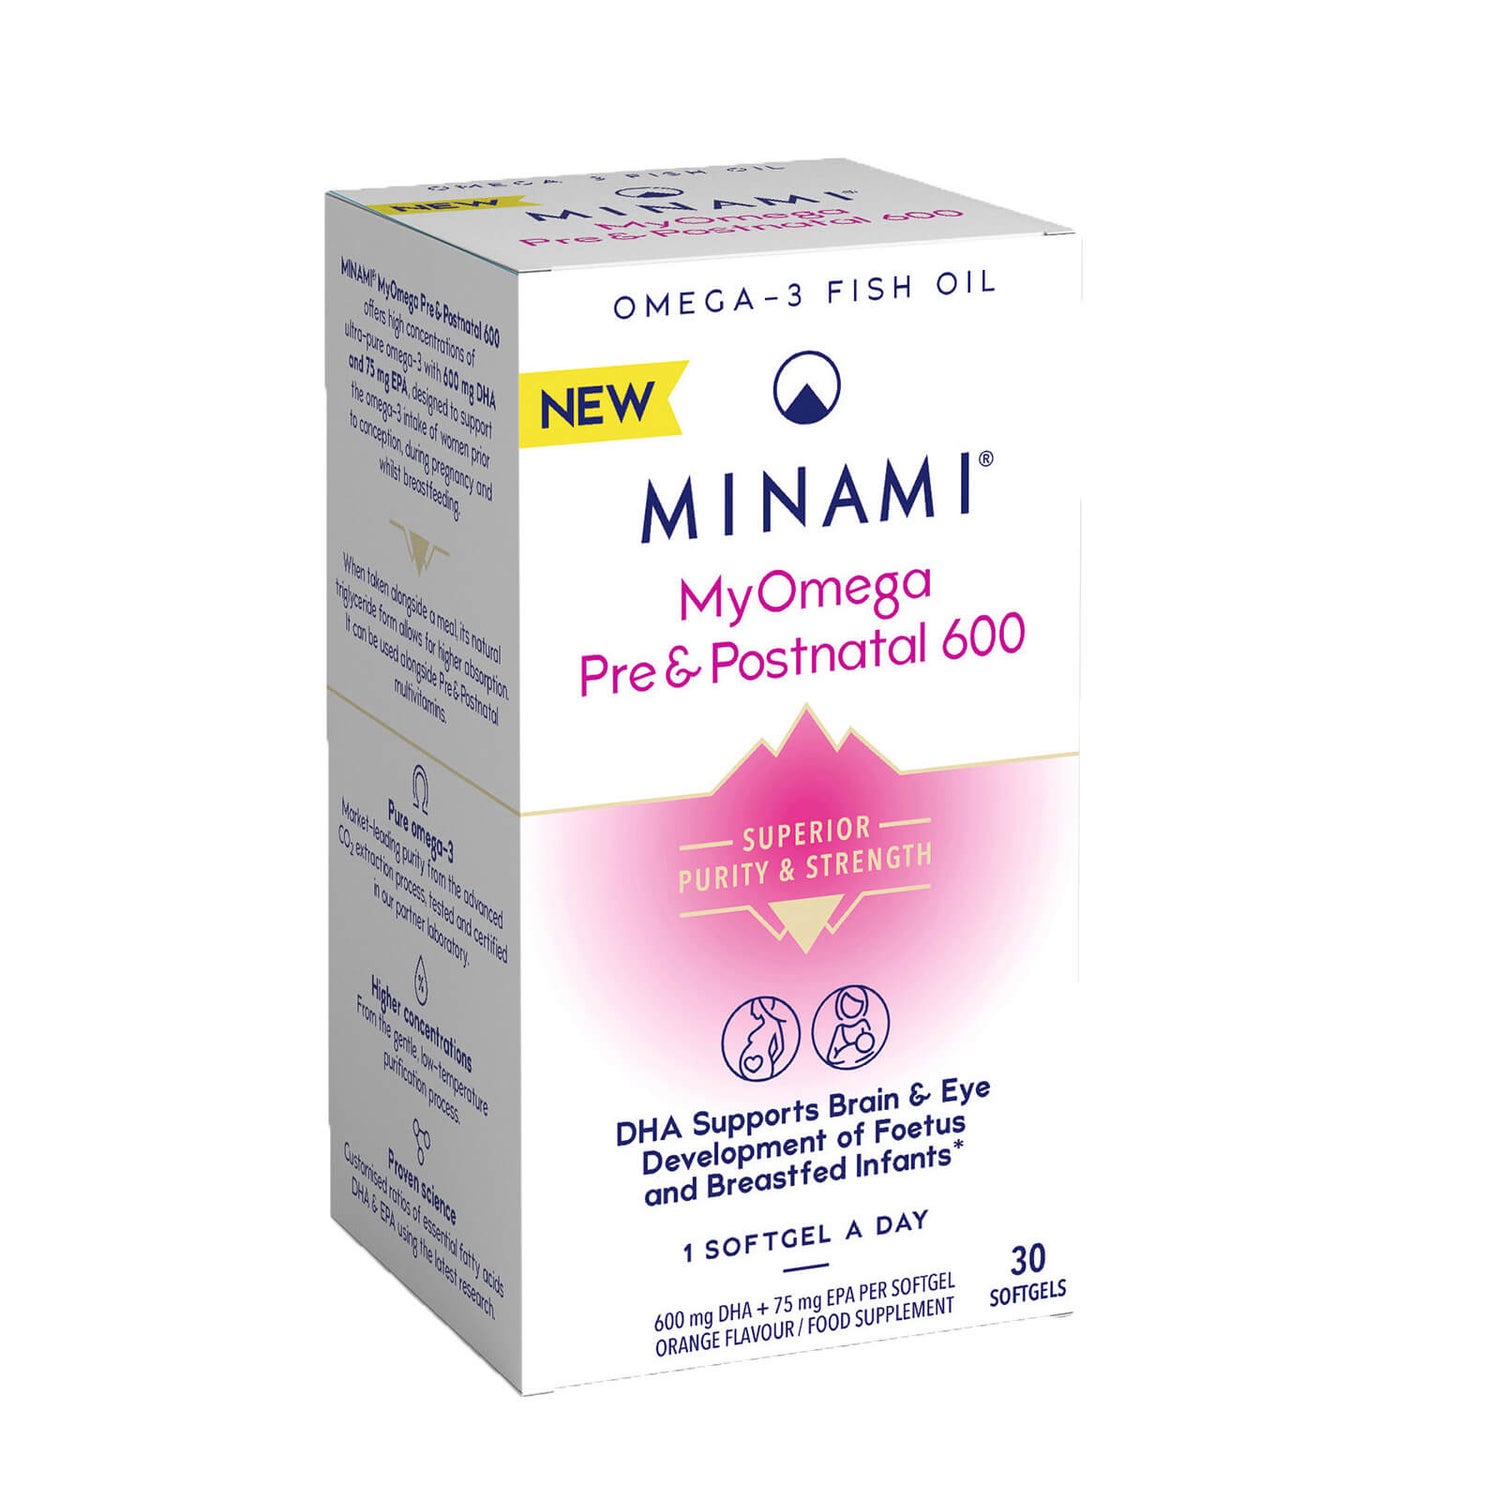 MINAMI® MyOmega Pre&Postnatal 600mg - 30 Softgels